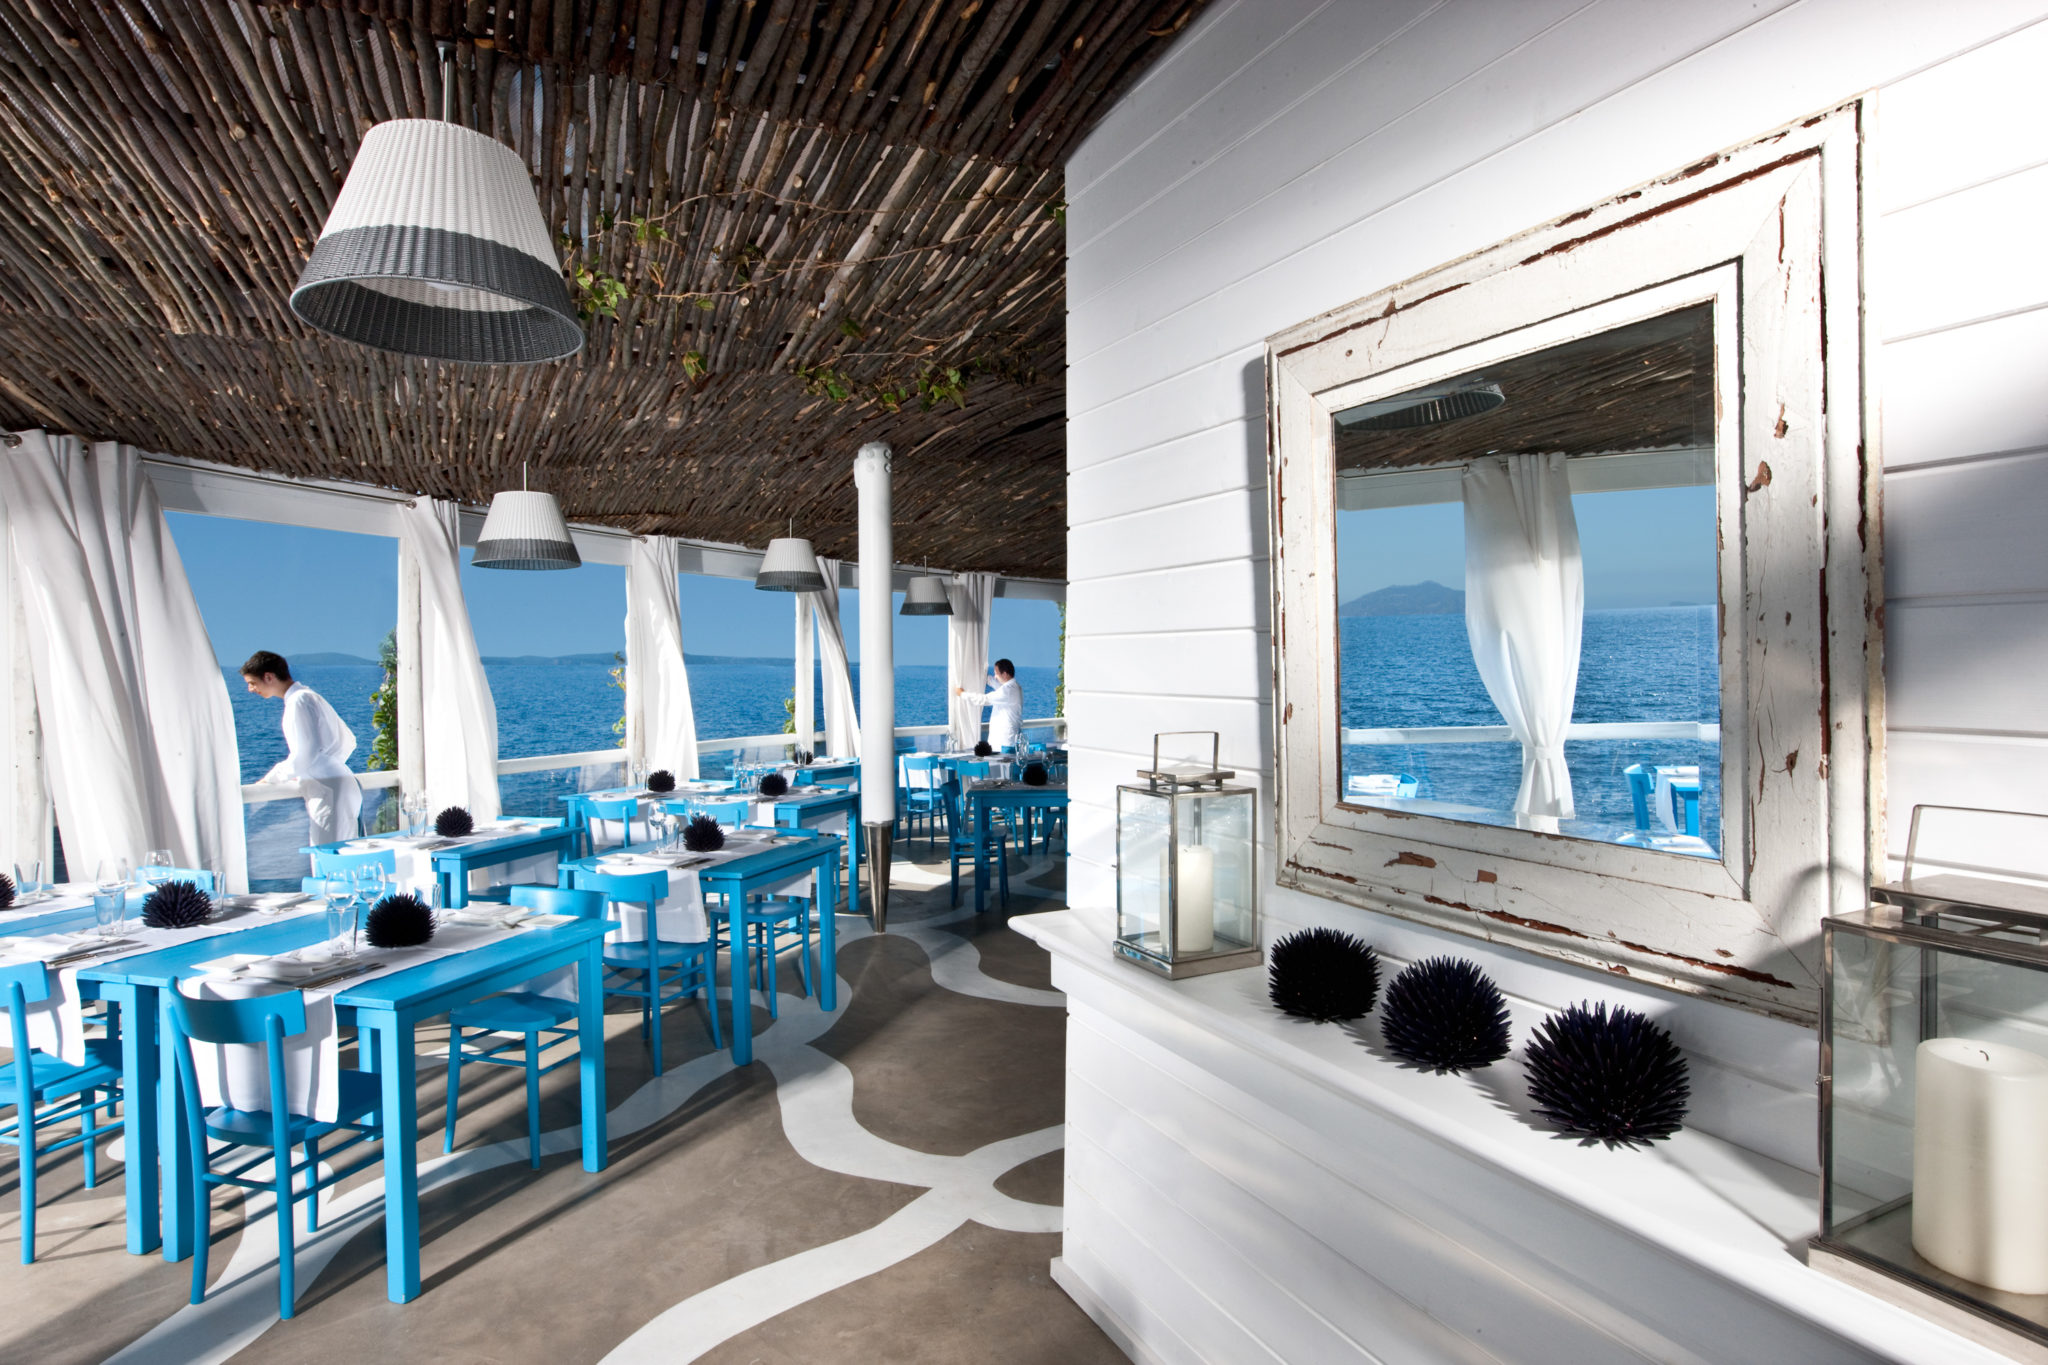 Кафе клева. Бич клаб капри. Рестораны остров капри. Кафе в морском стиле. Ресторан с морской тематикой.